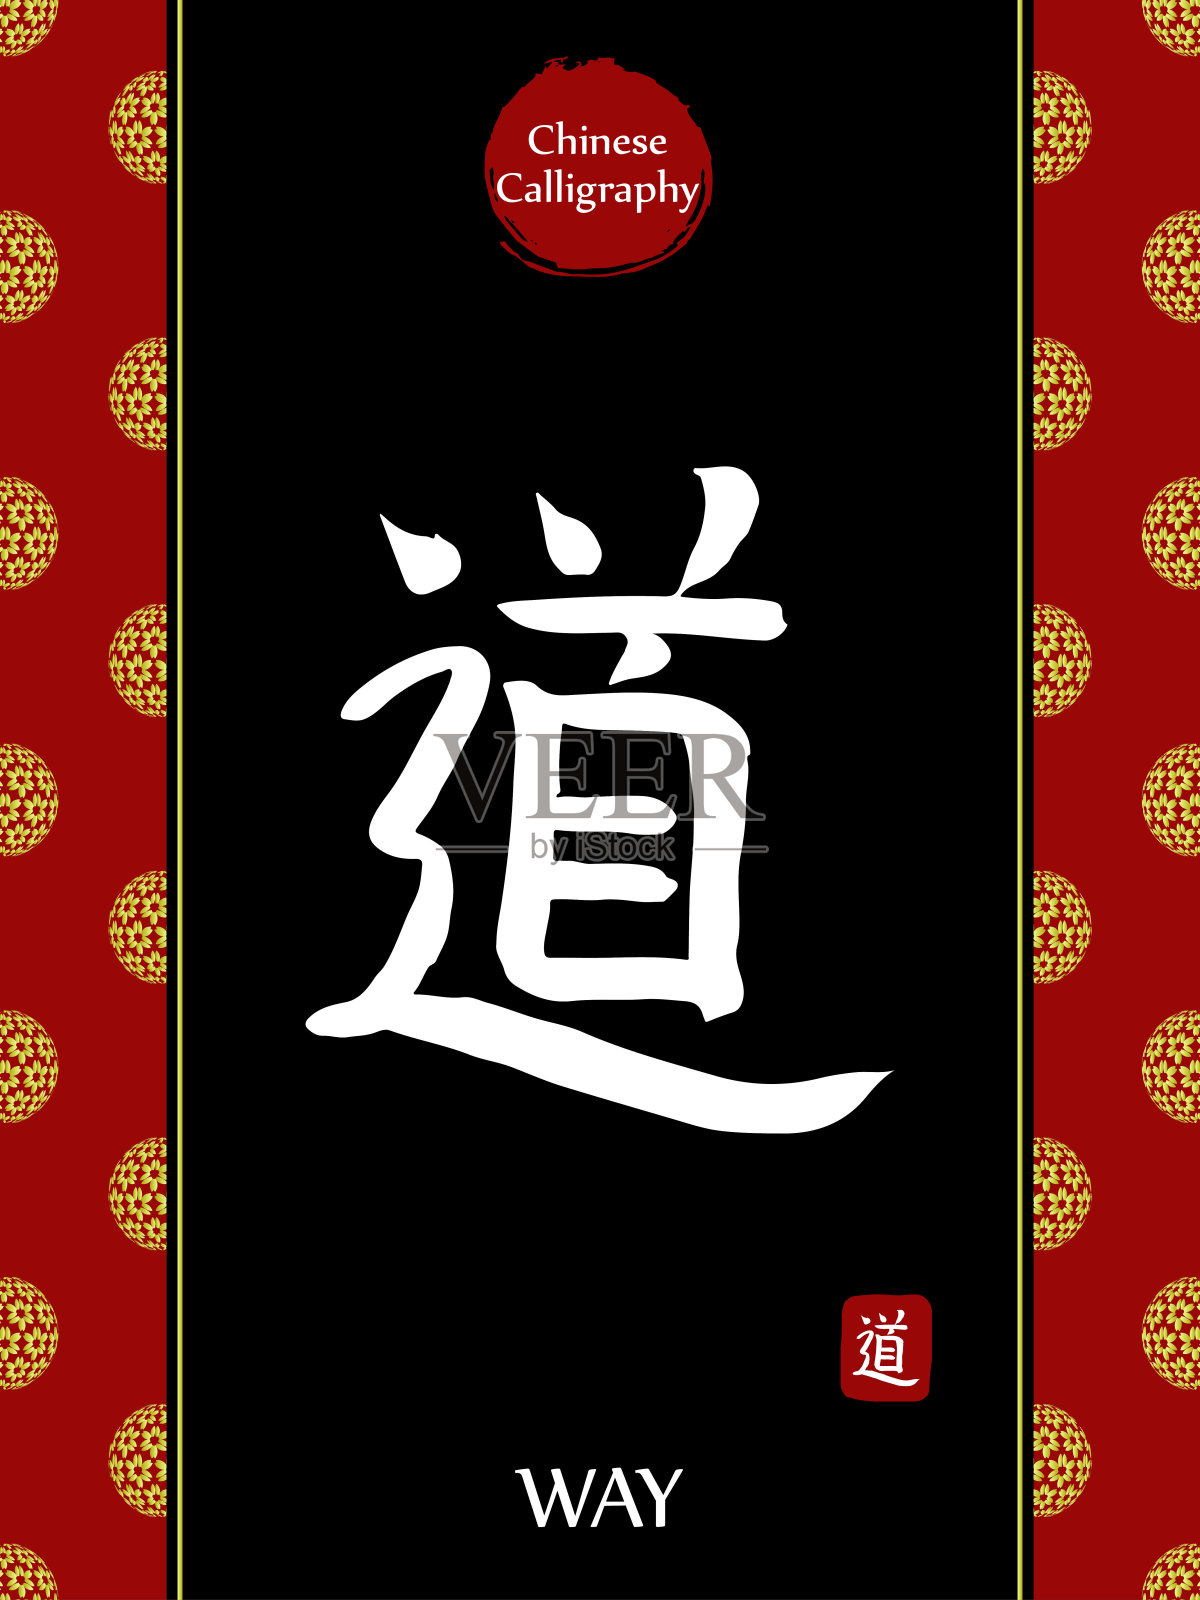 中国书法象形文字的翻译:方法。亚洲金花球农历新年图案。向量中国符号在黑色背景。手绘图画文字。毛笔书法插画图片素材